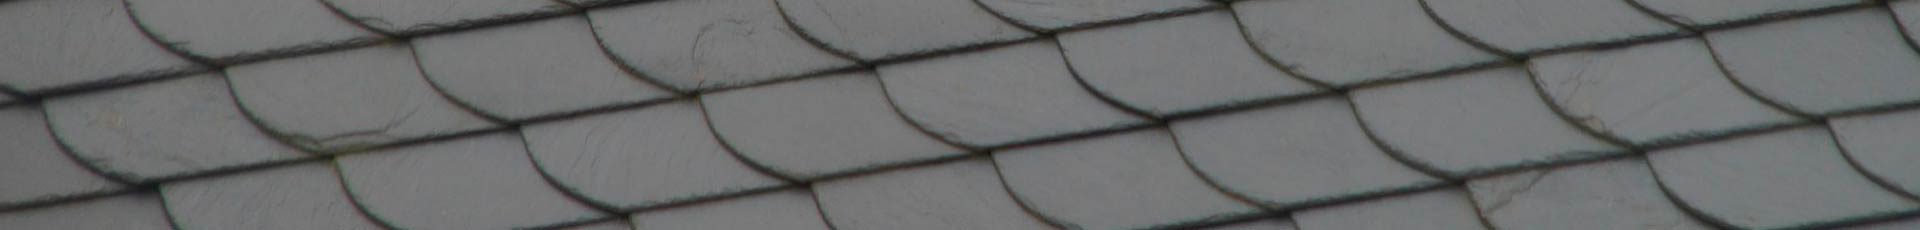 Reparación de Tejados tejados de pizarra imperbel